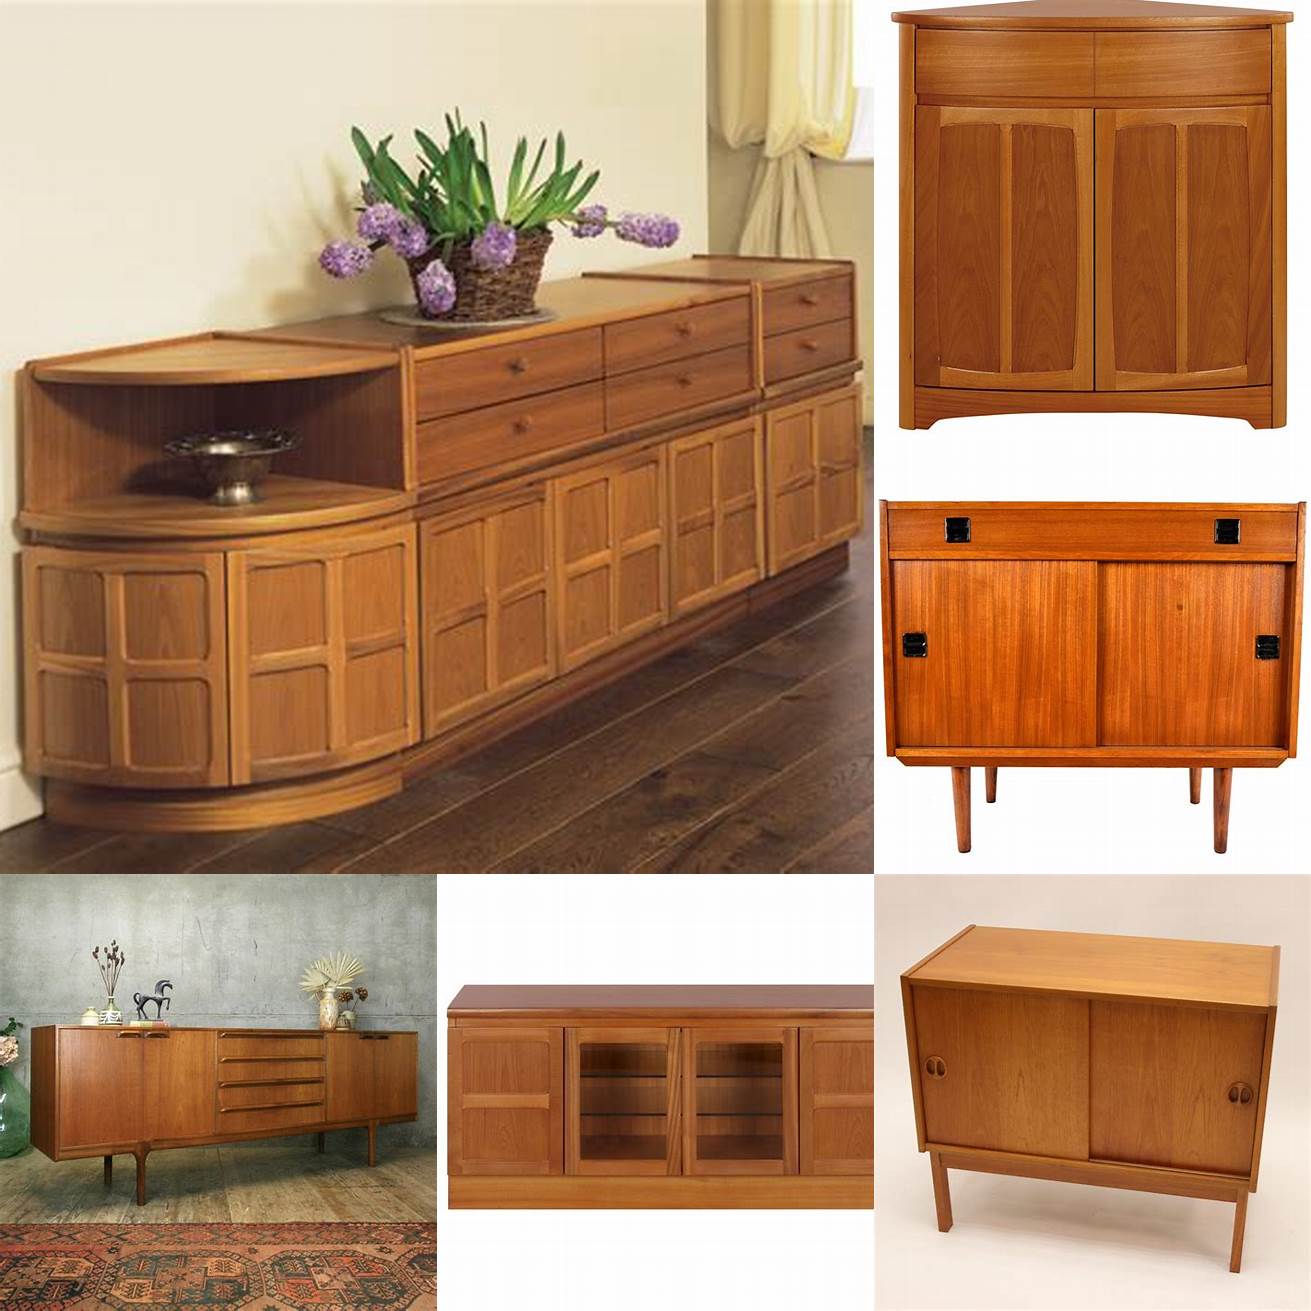 Wood Classics Teak Cabinets